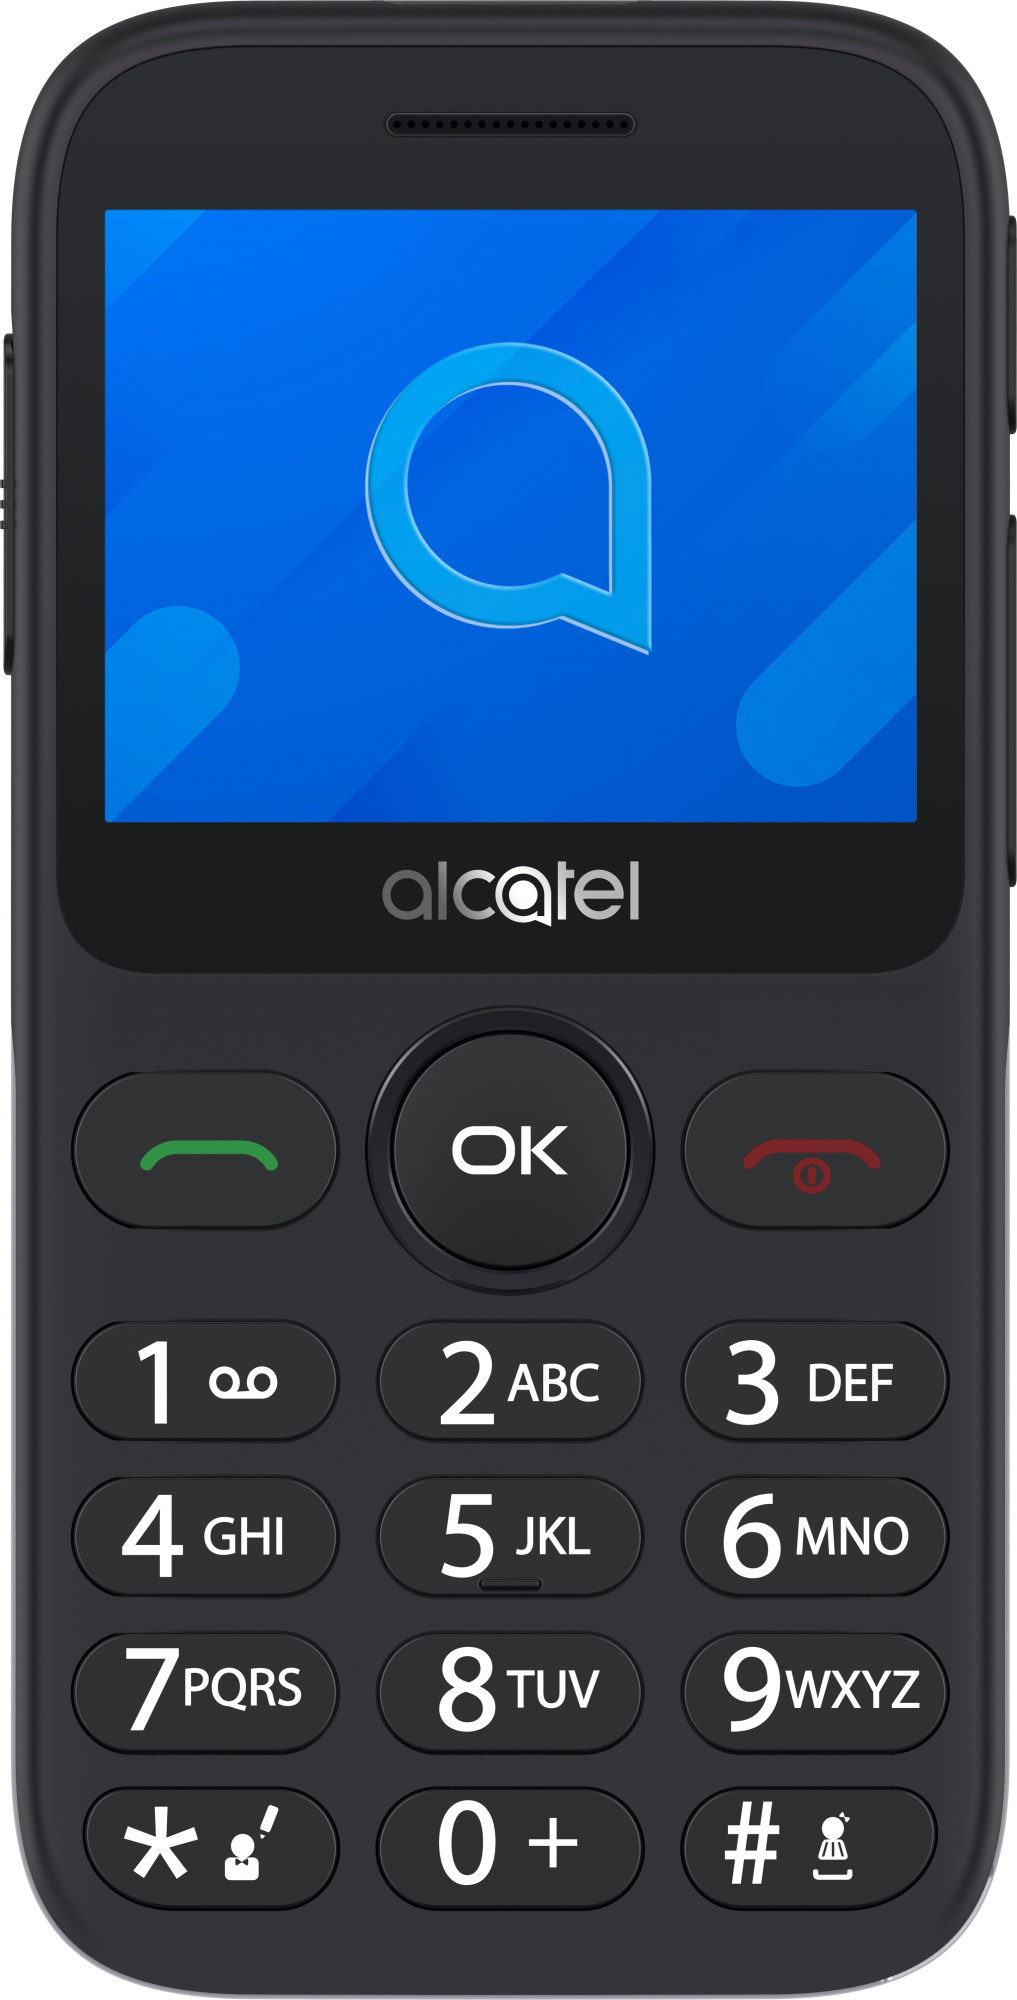 Мобильный телефон Alcatel 2020X, серебристый 